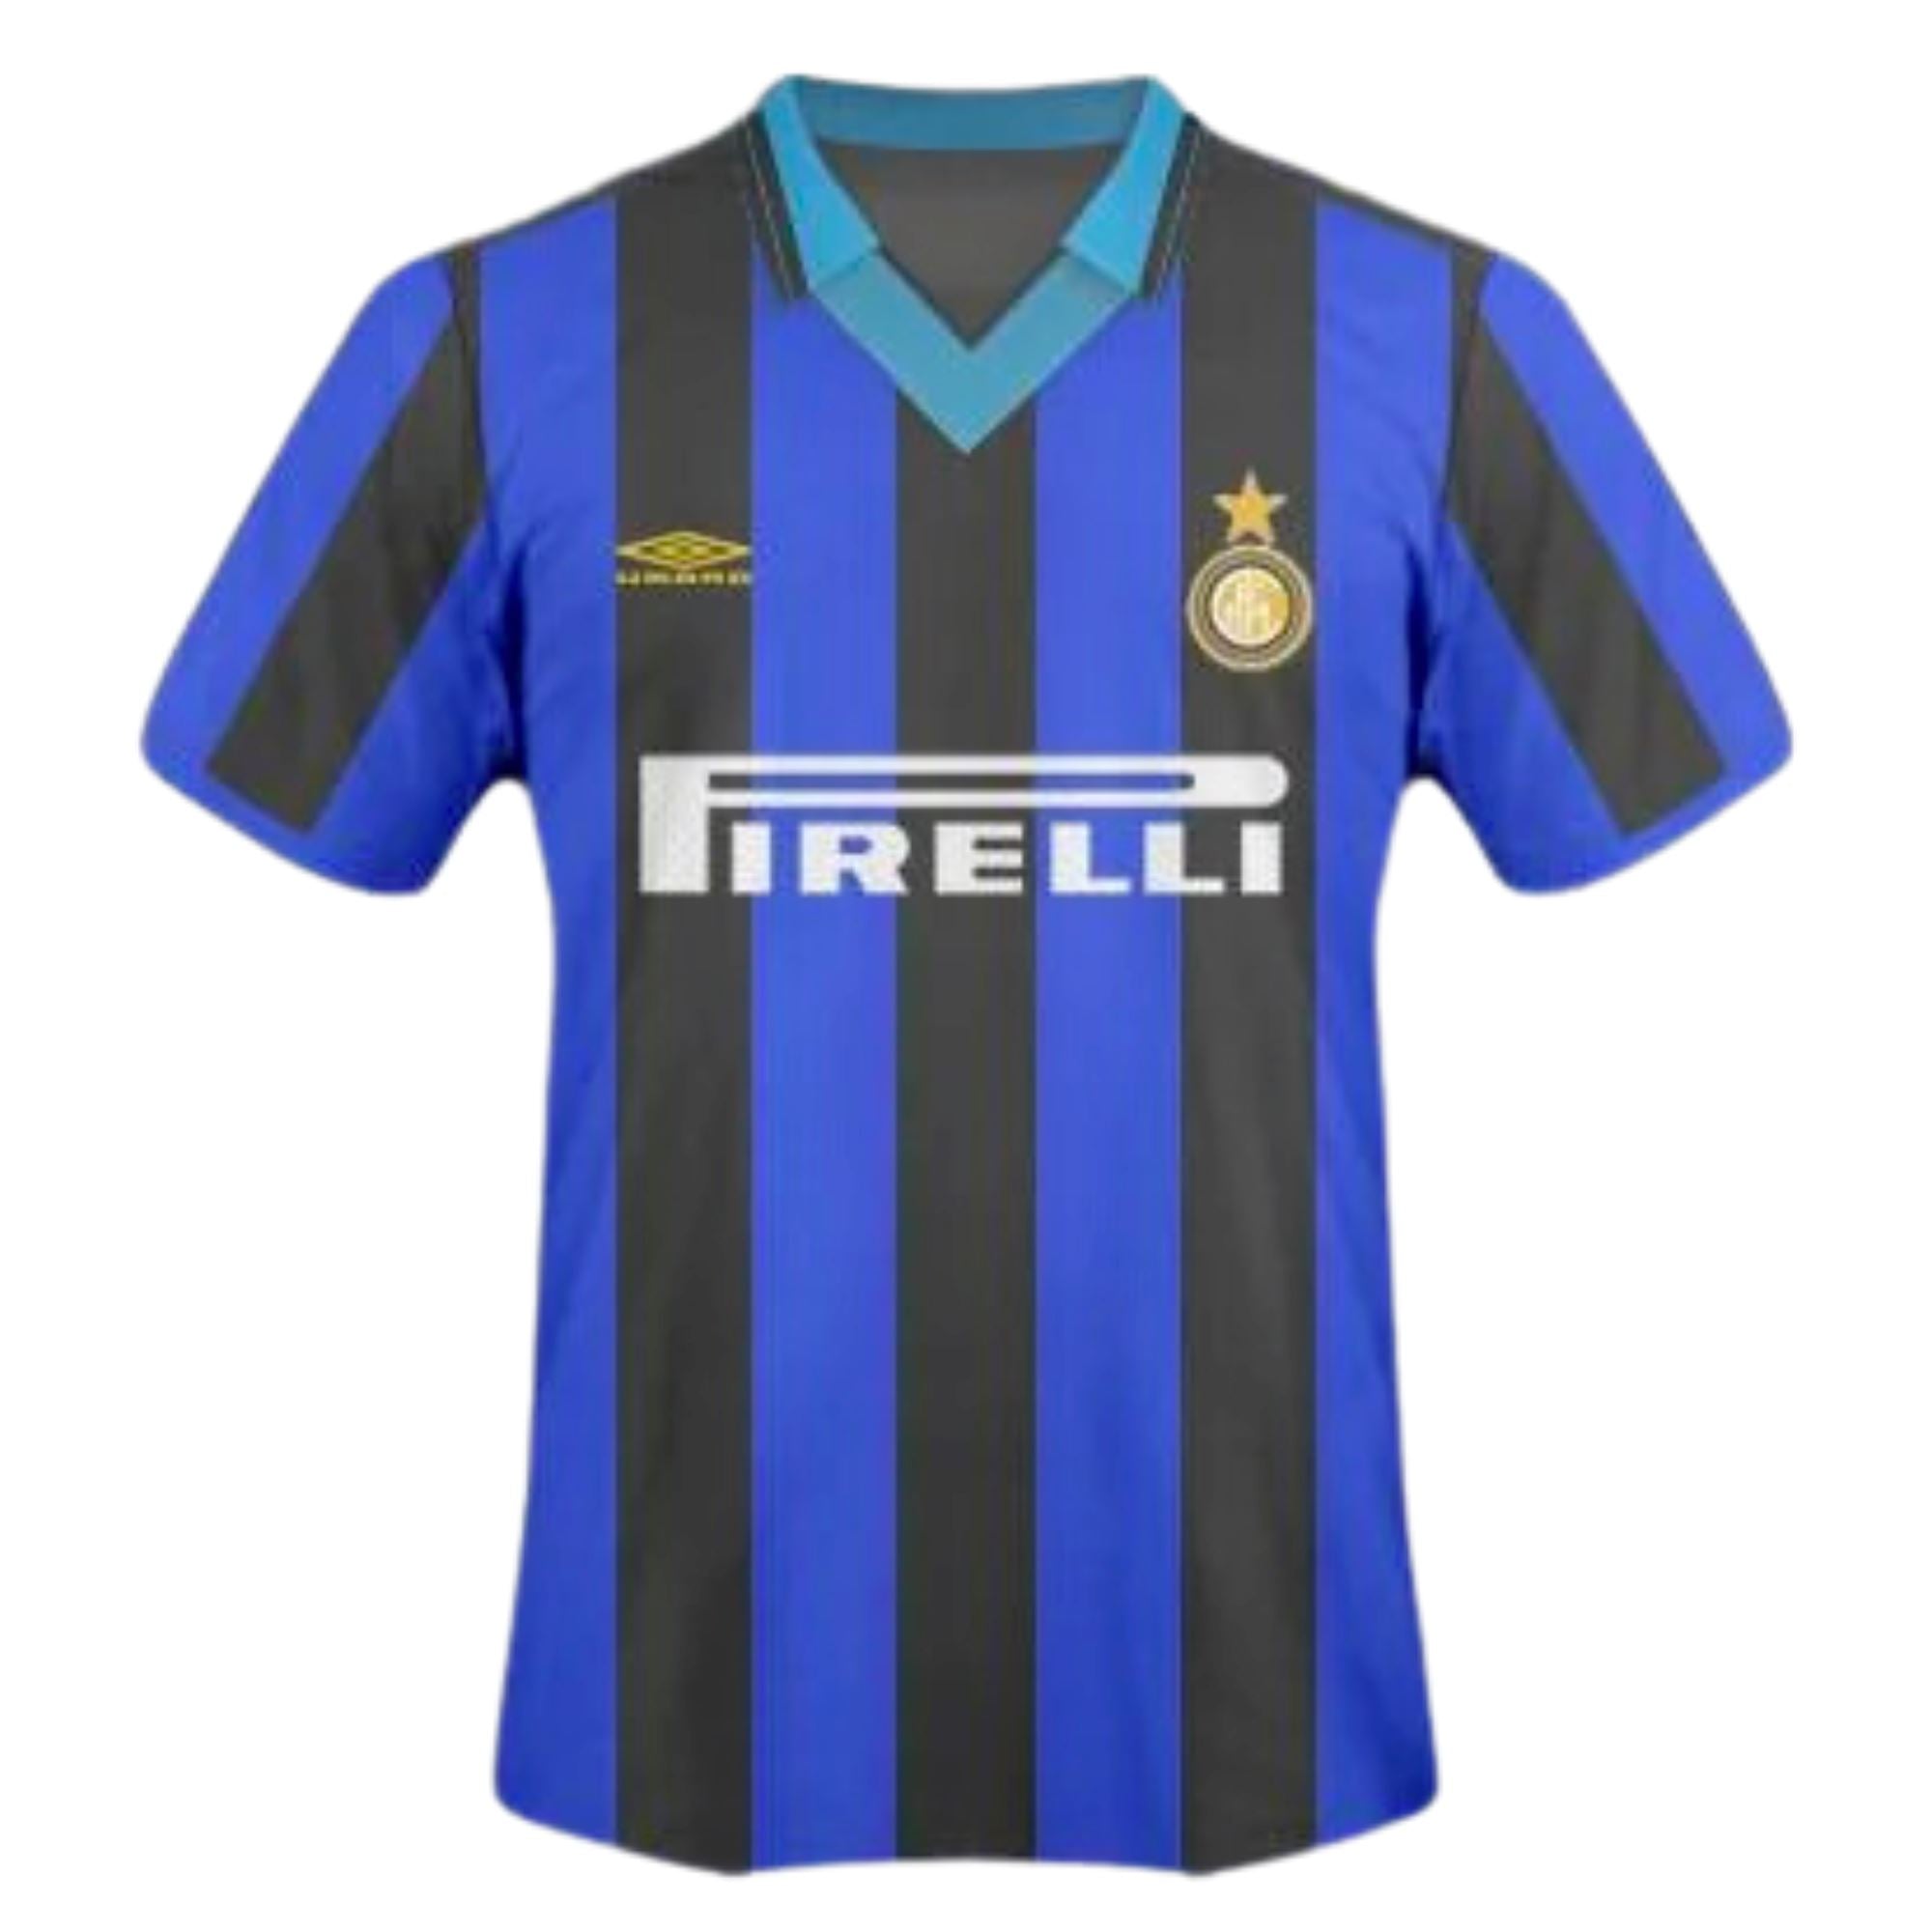 1995/96 Inter Milan Home Jersey - ITASPORT